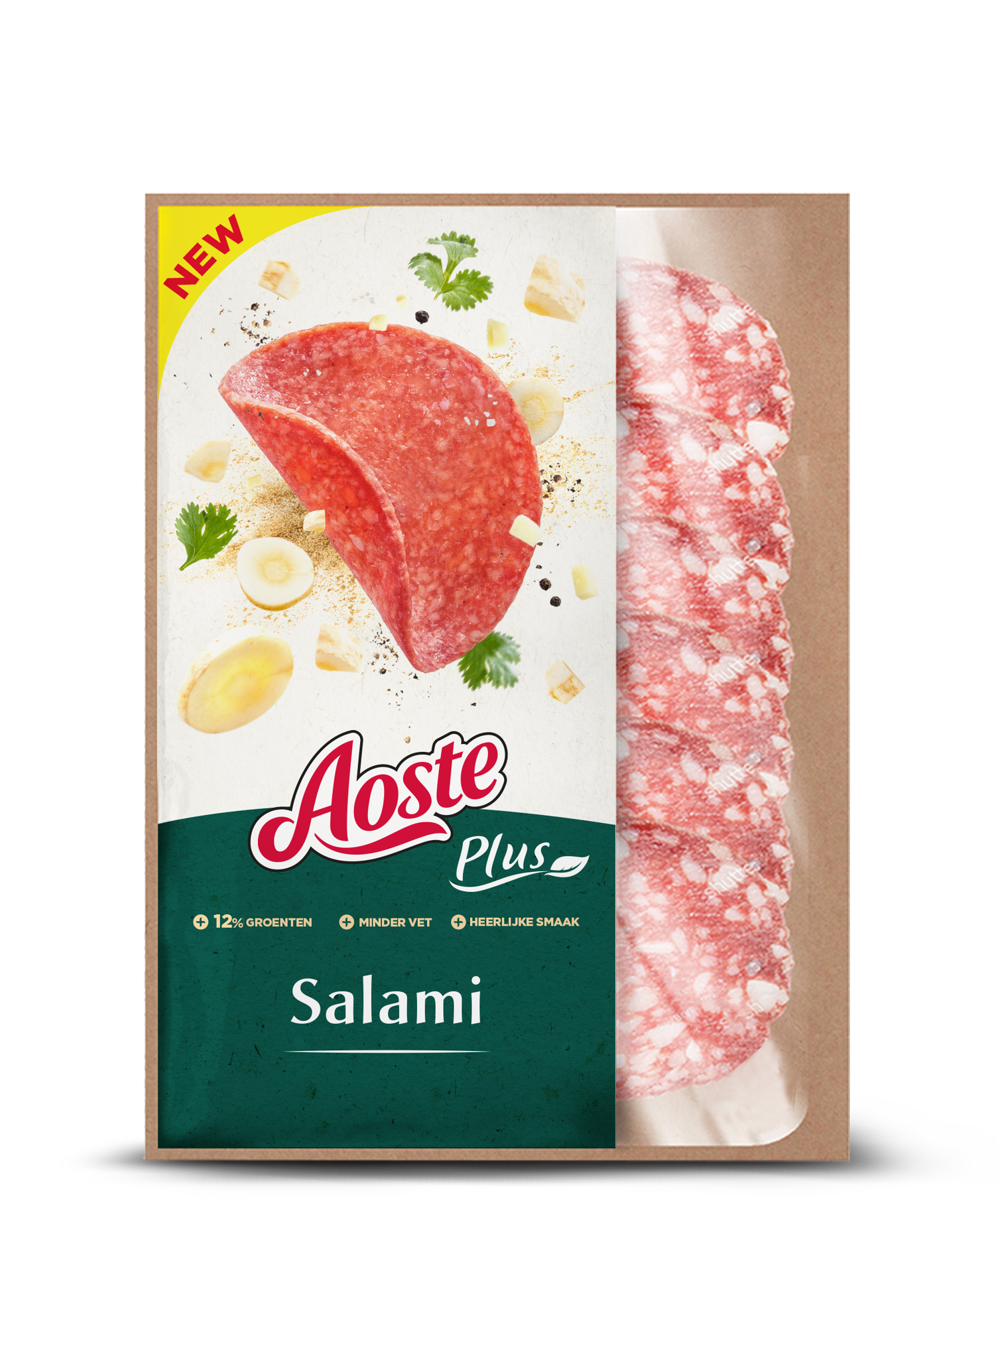 Aoste Plus Salami voor op de boterham: €2.79 voor 90gr